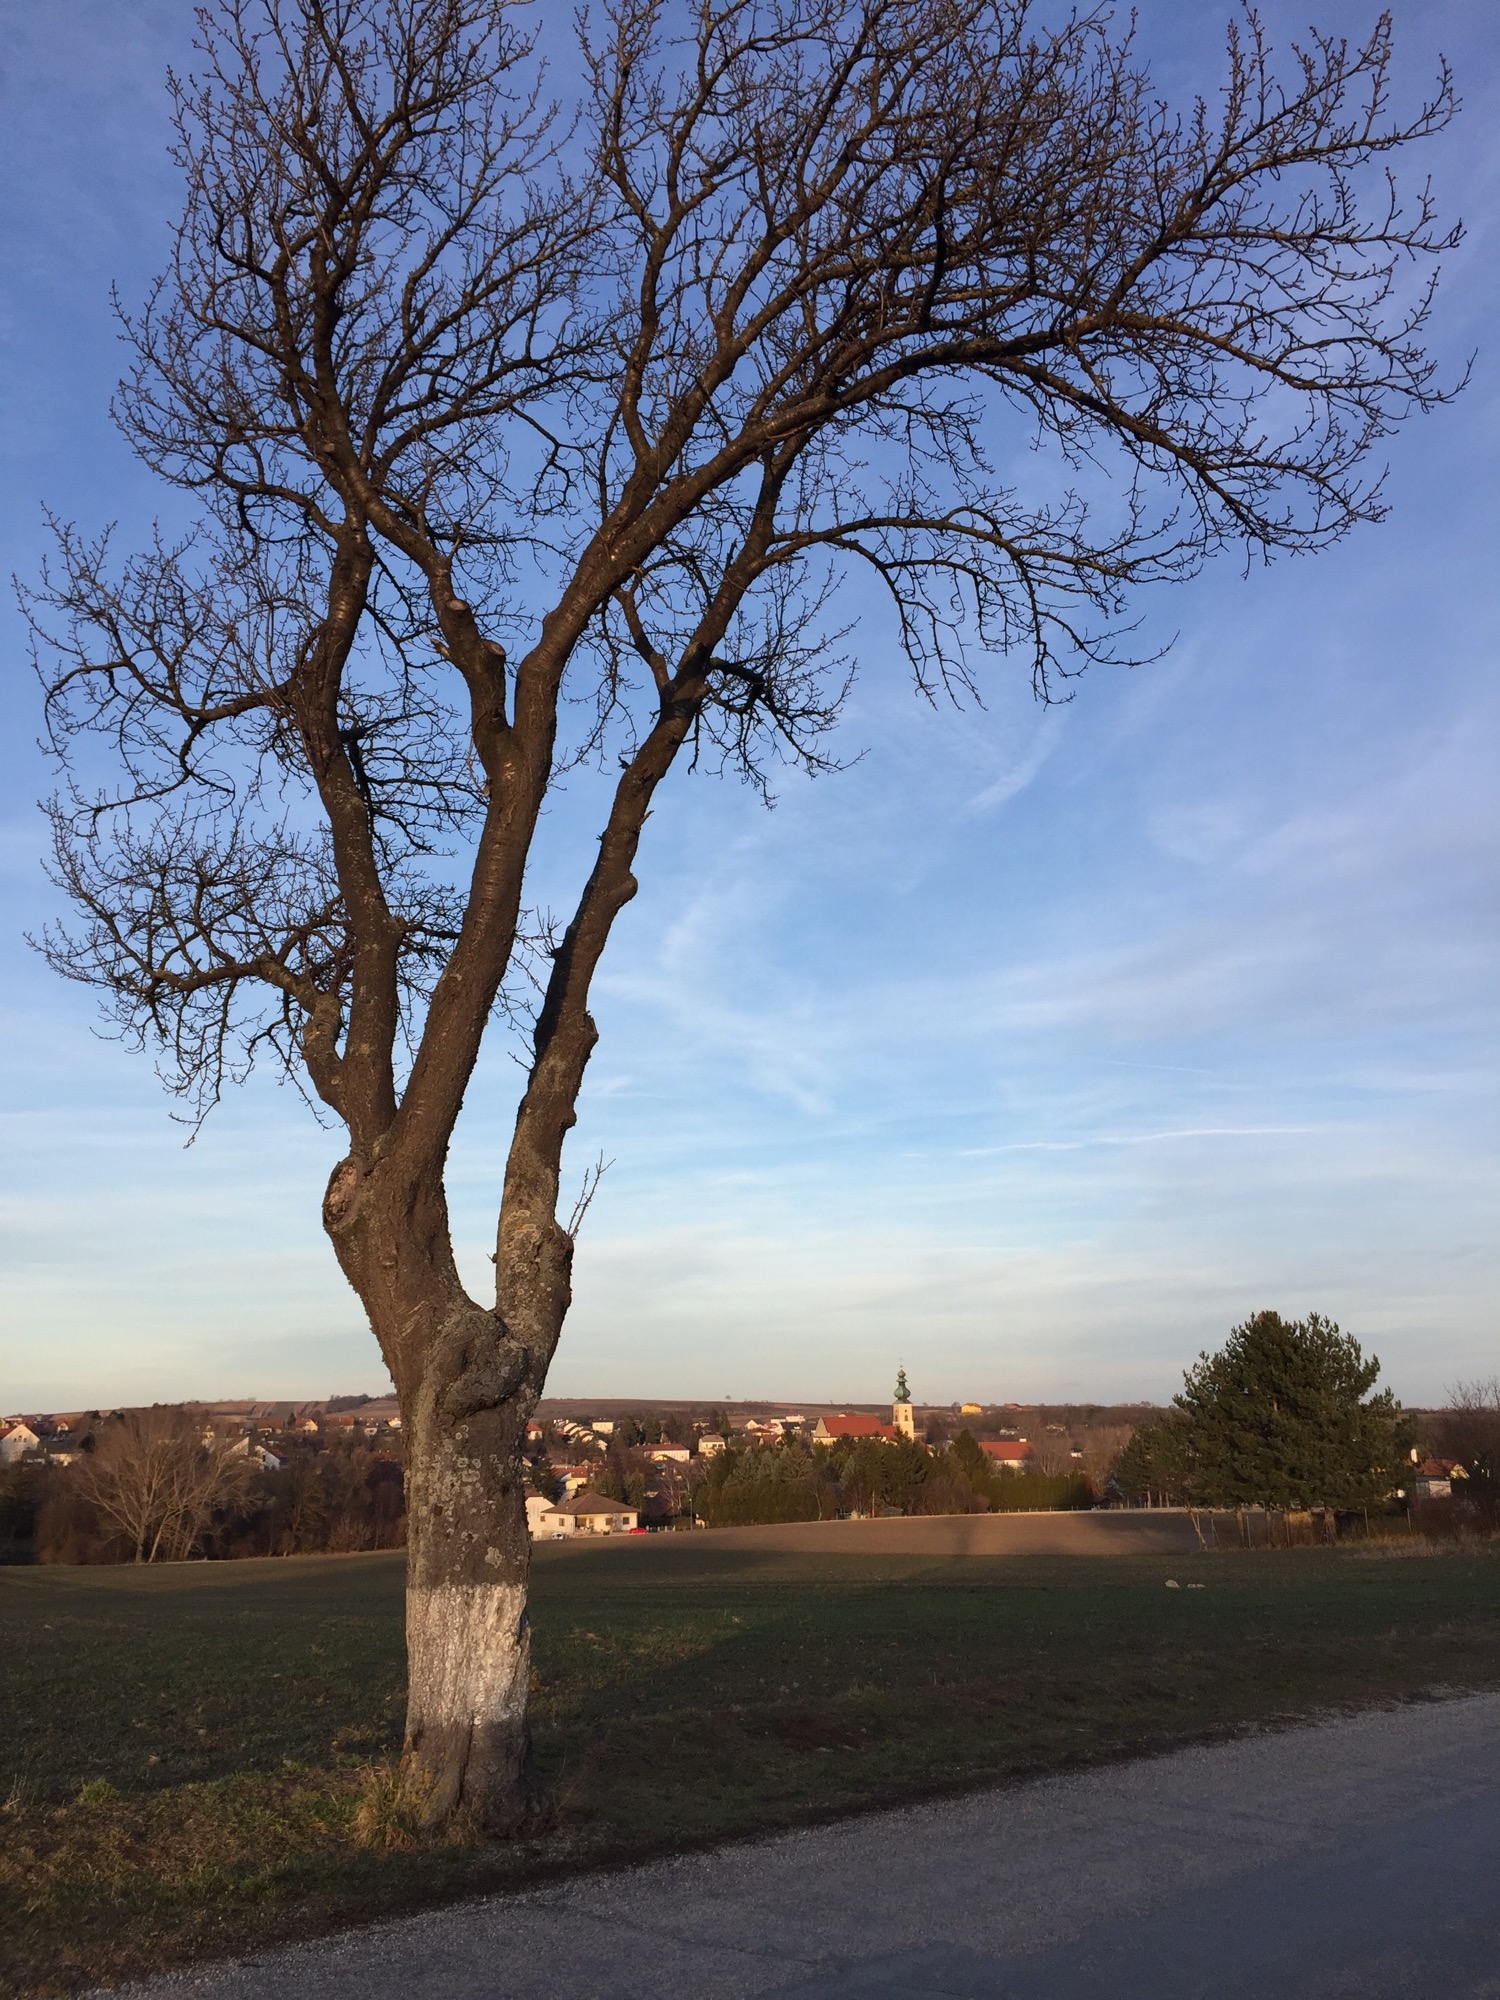 kahler, oben nach rechts geneigter Baum im Vordergrund, unter dem Baum im Hintergrund Gaweinstal mit Kirchturm